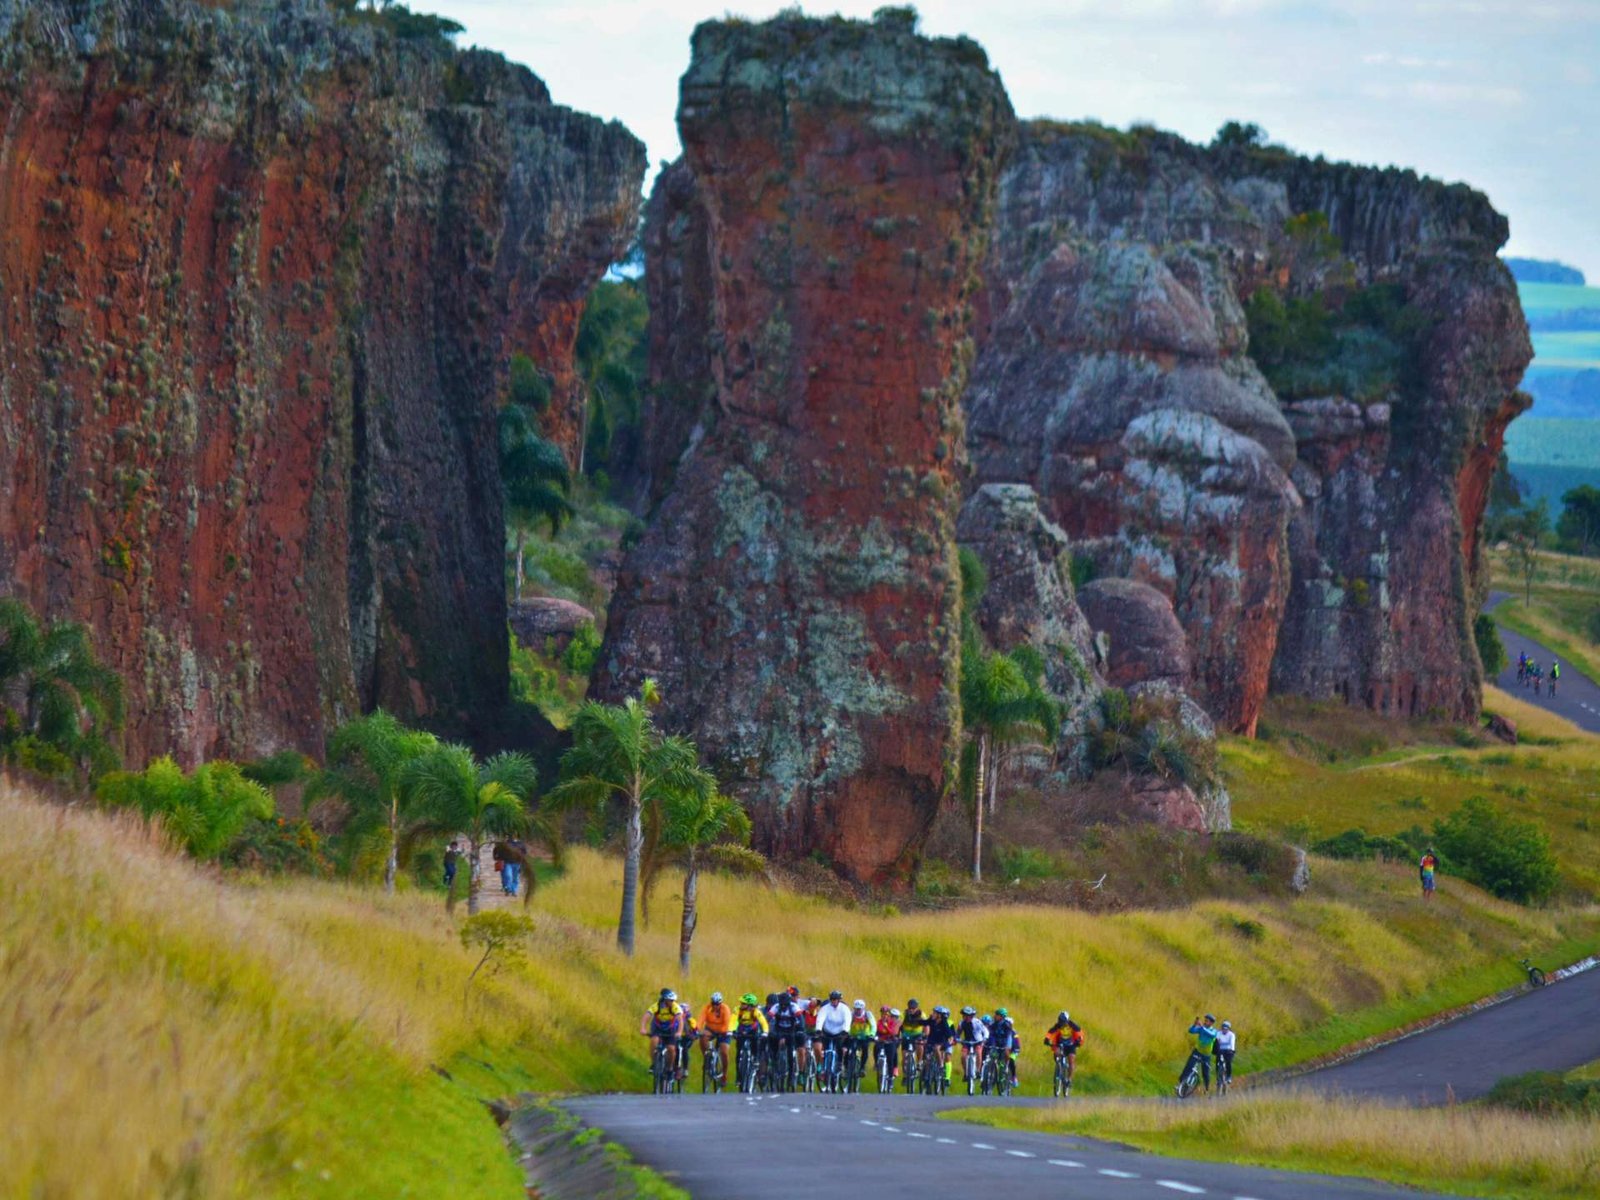 Ciclistas pedalam em Grupo em meio a formações rochosas no Parque Vila Velha